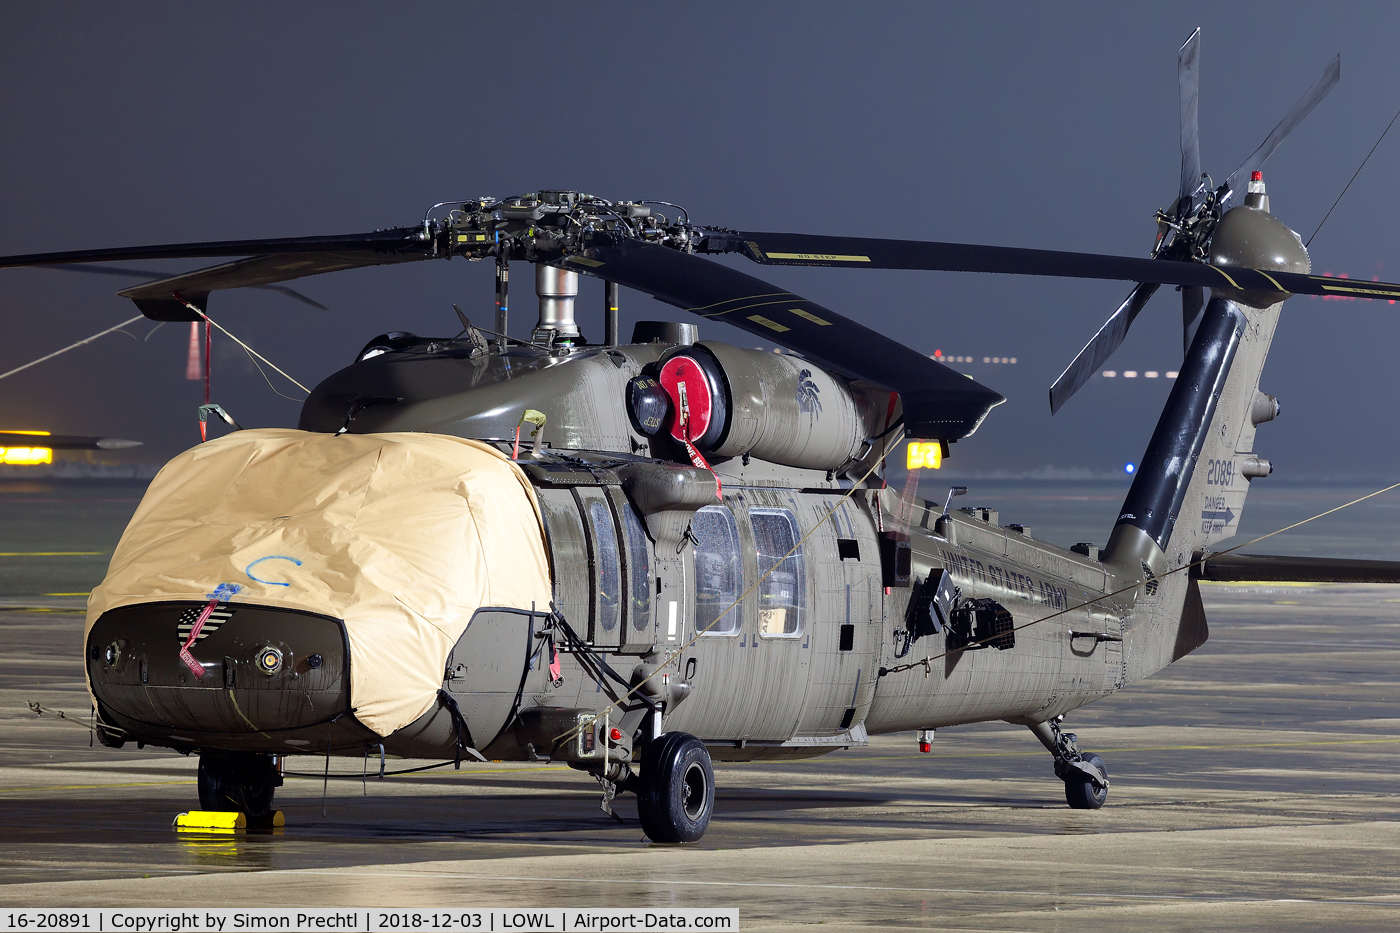 16-20891, Sikorsky UH-60M Black Hawk C/N 704927, 16-20891 @ Linz Airport